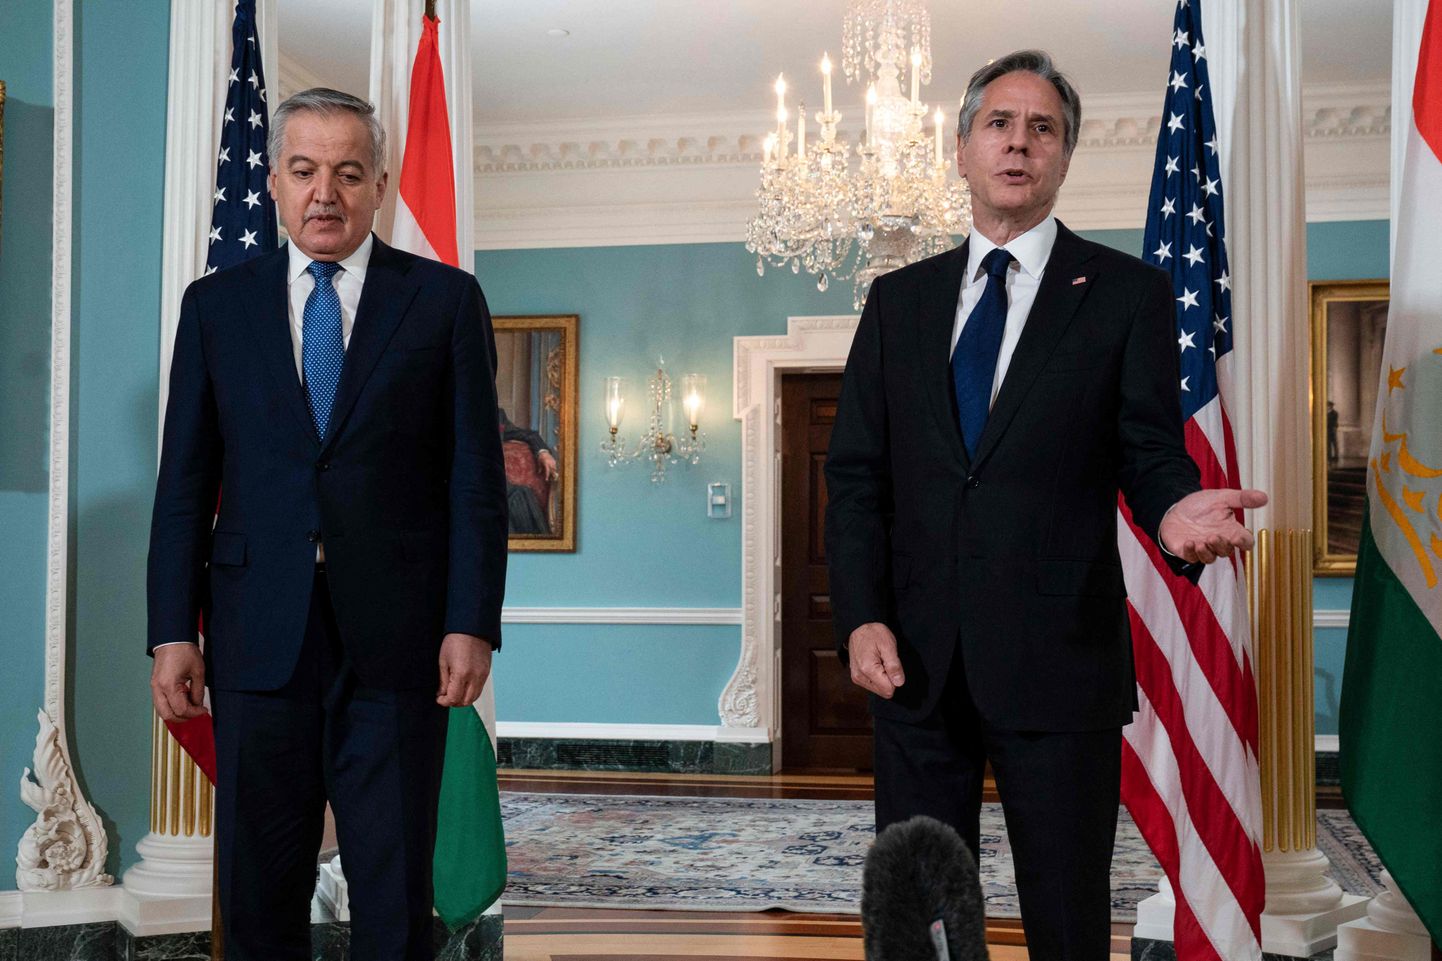 Tadžikistani välisminister Sirodžiddin Muhriddin (vasakul) ja USA välisminister Antony Blinken Washingtonis 1. juuli 2021.